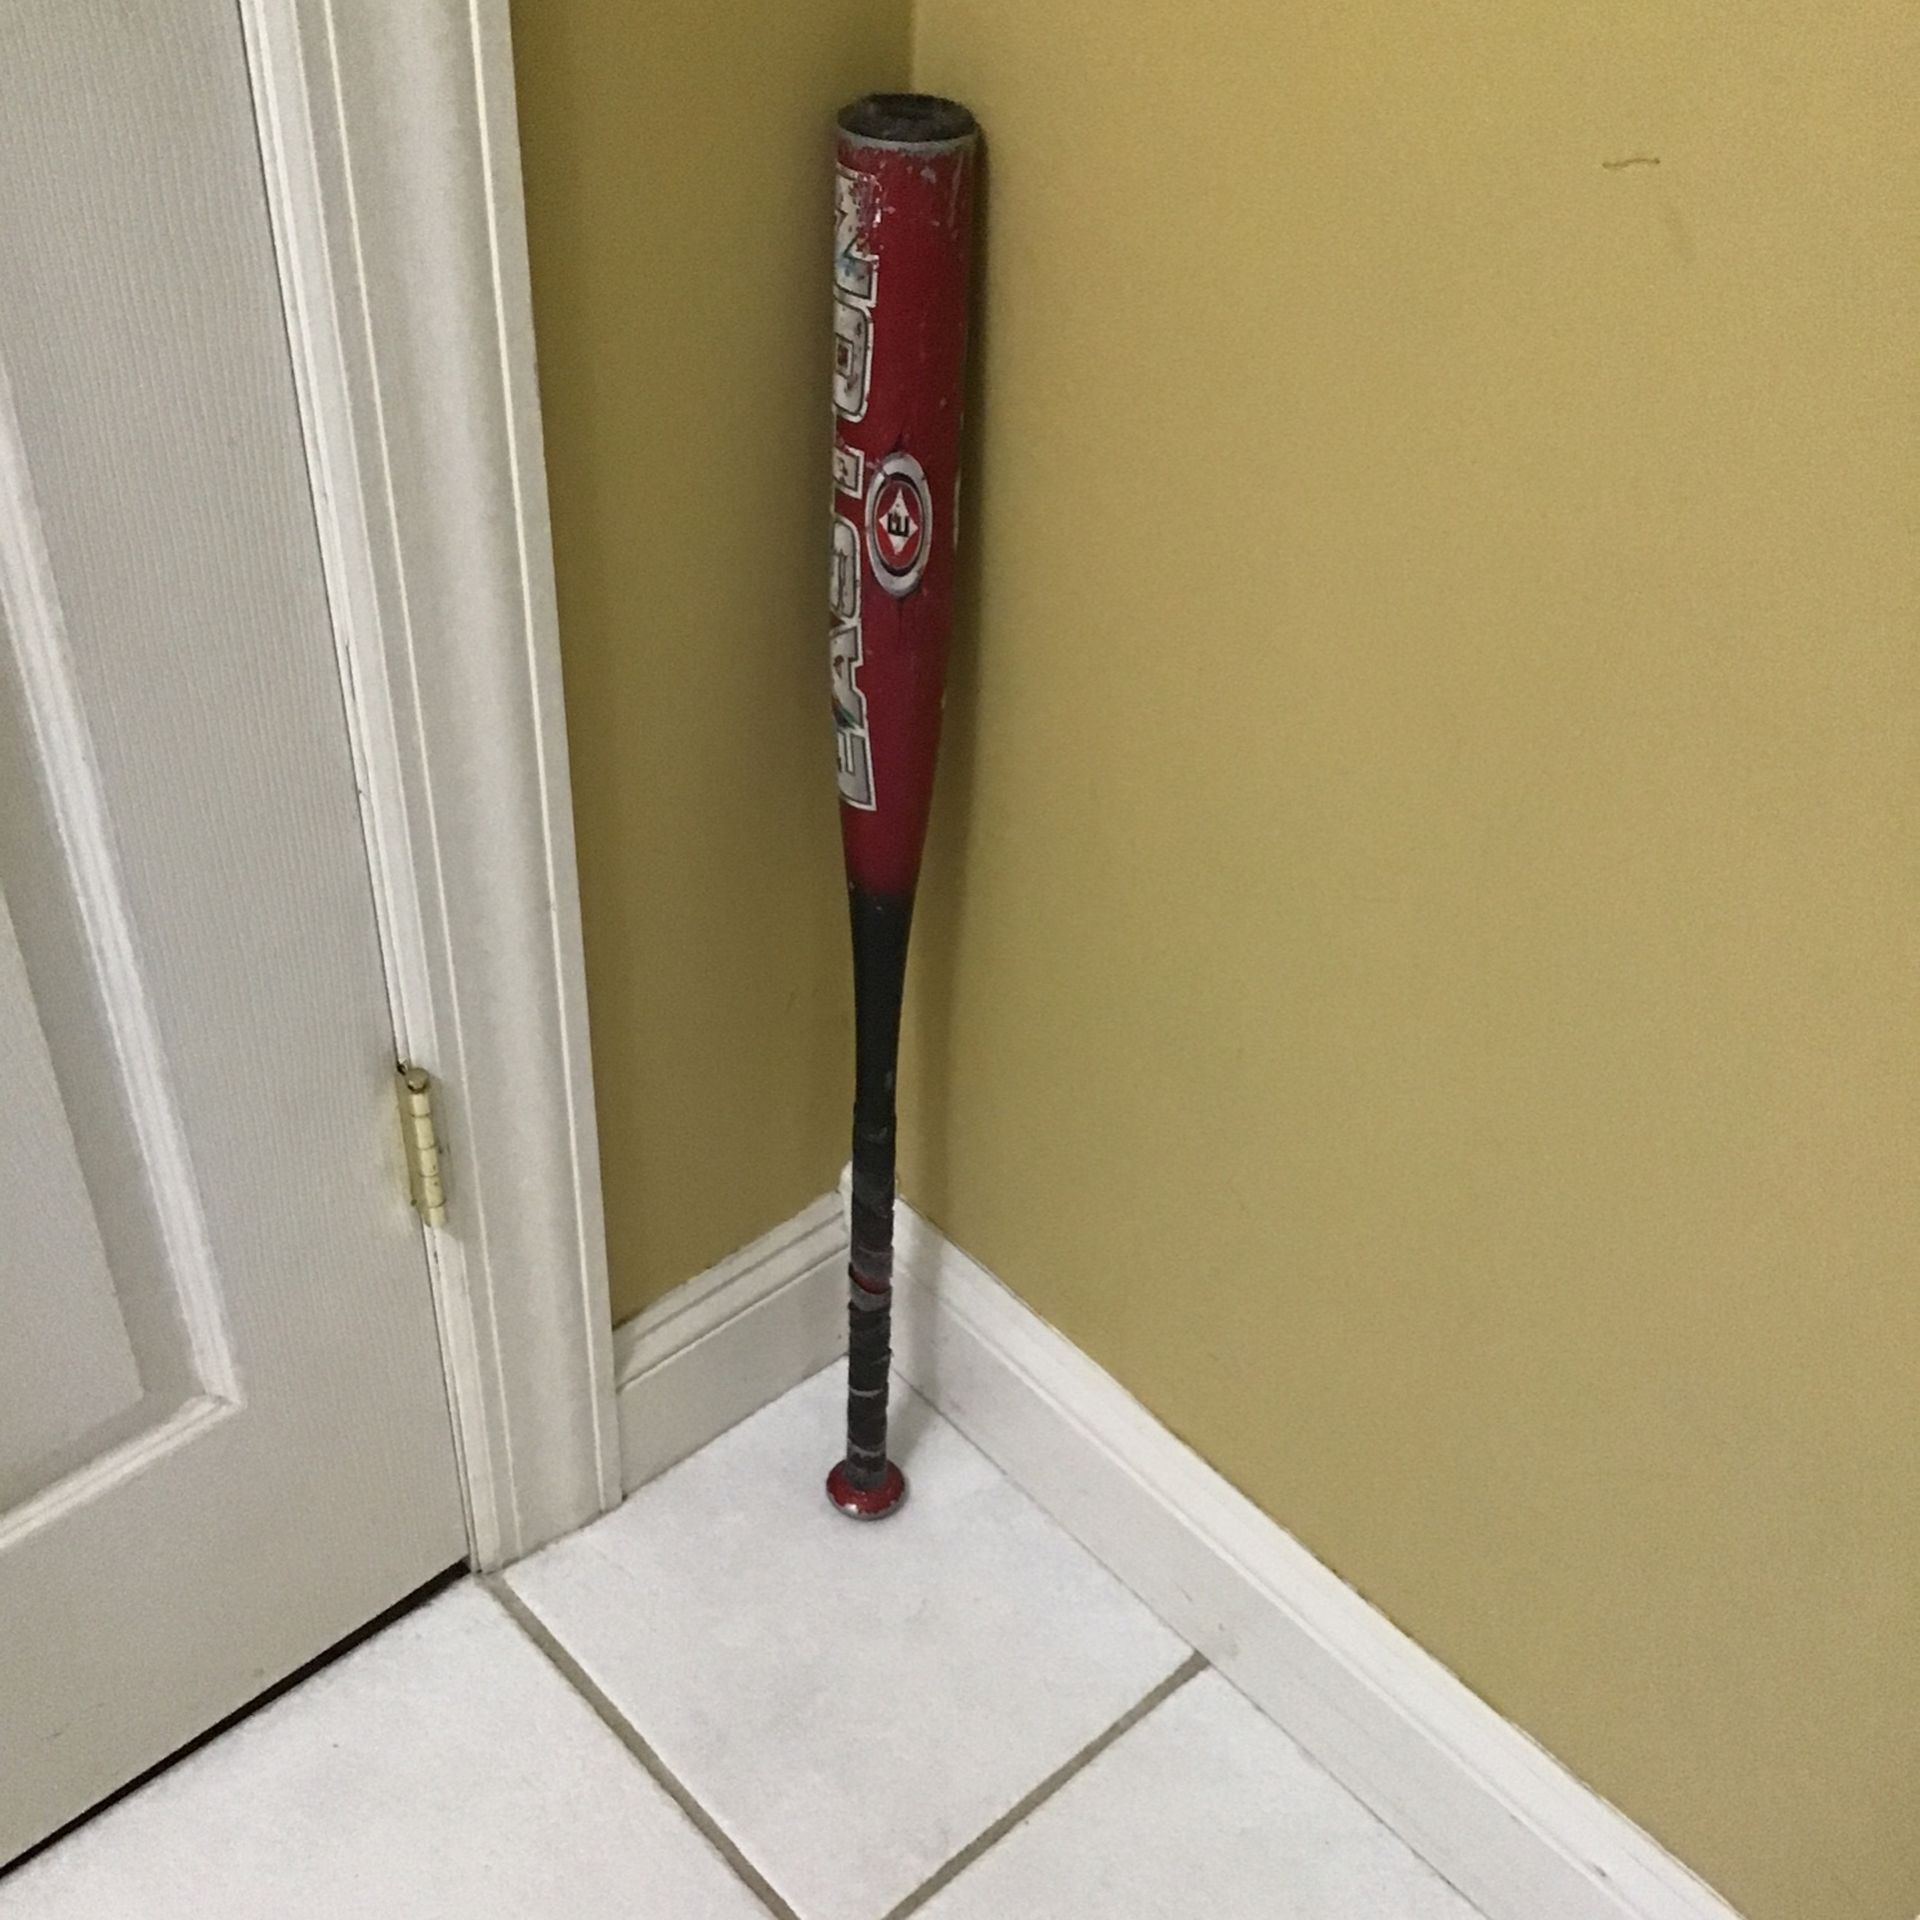  Baseball bat